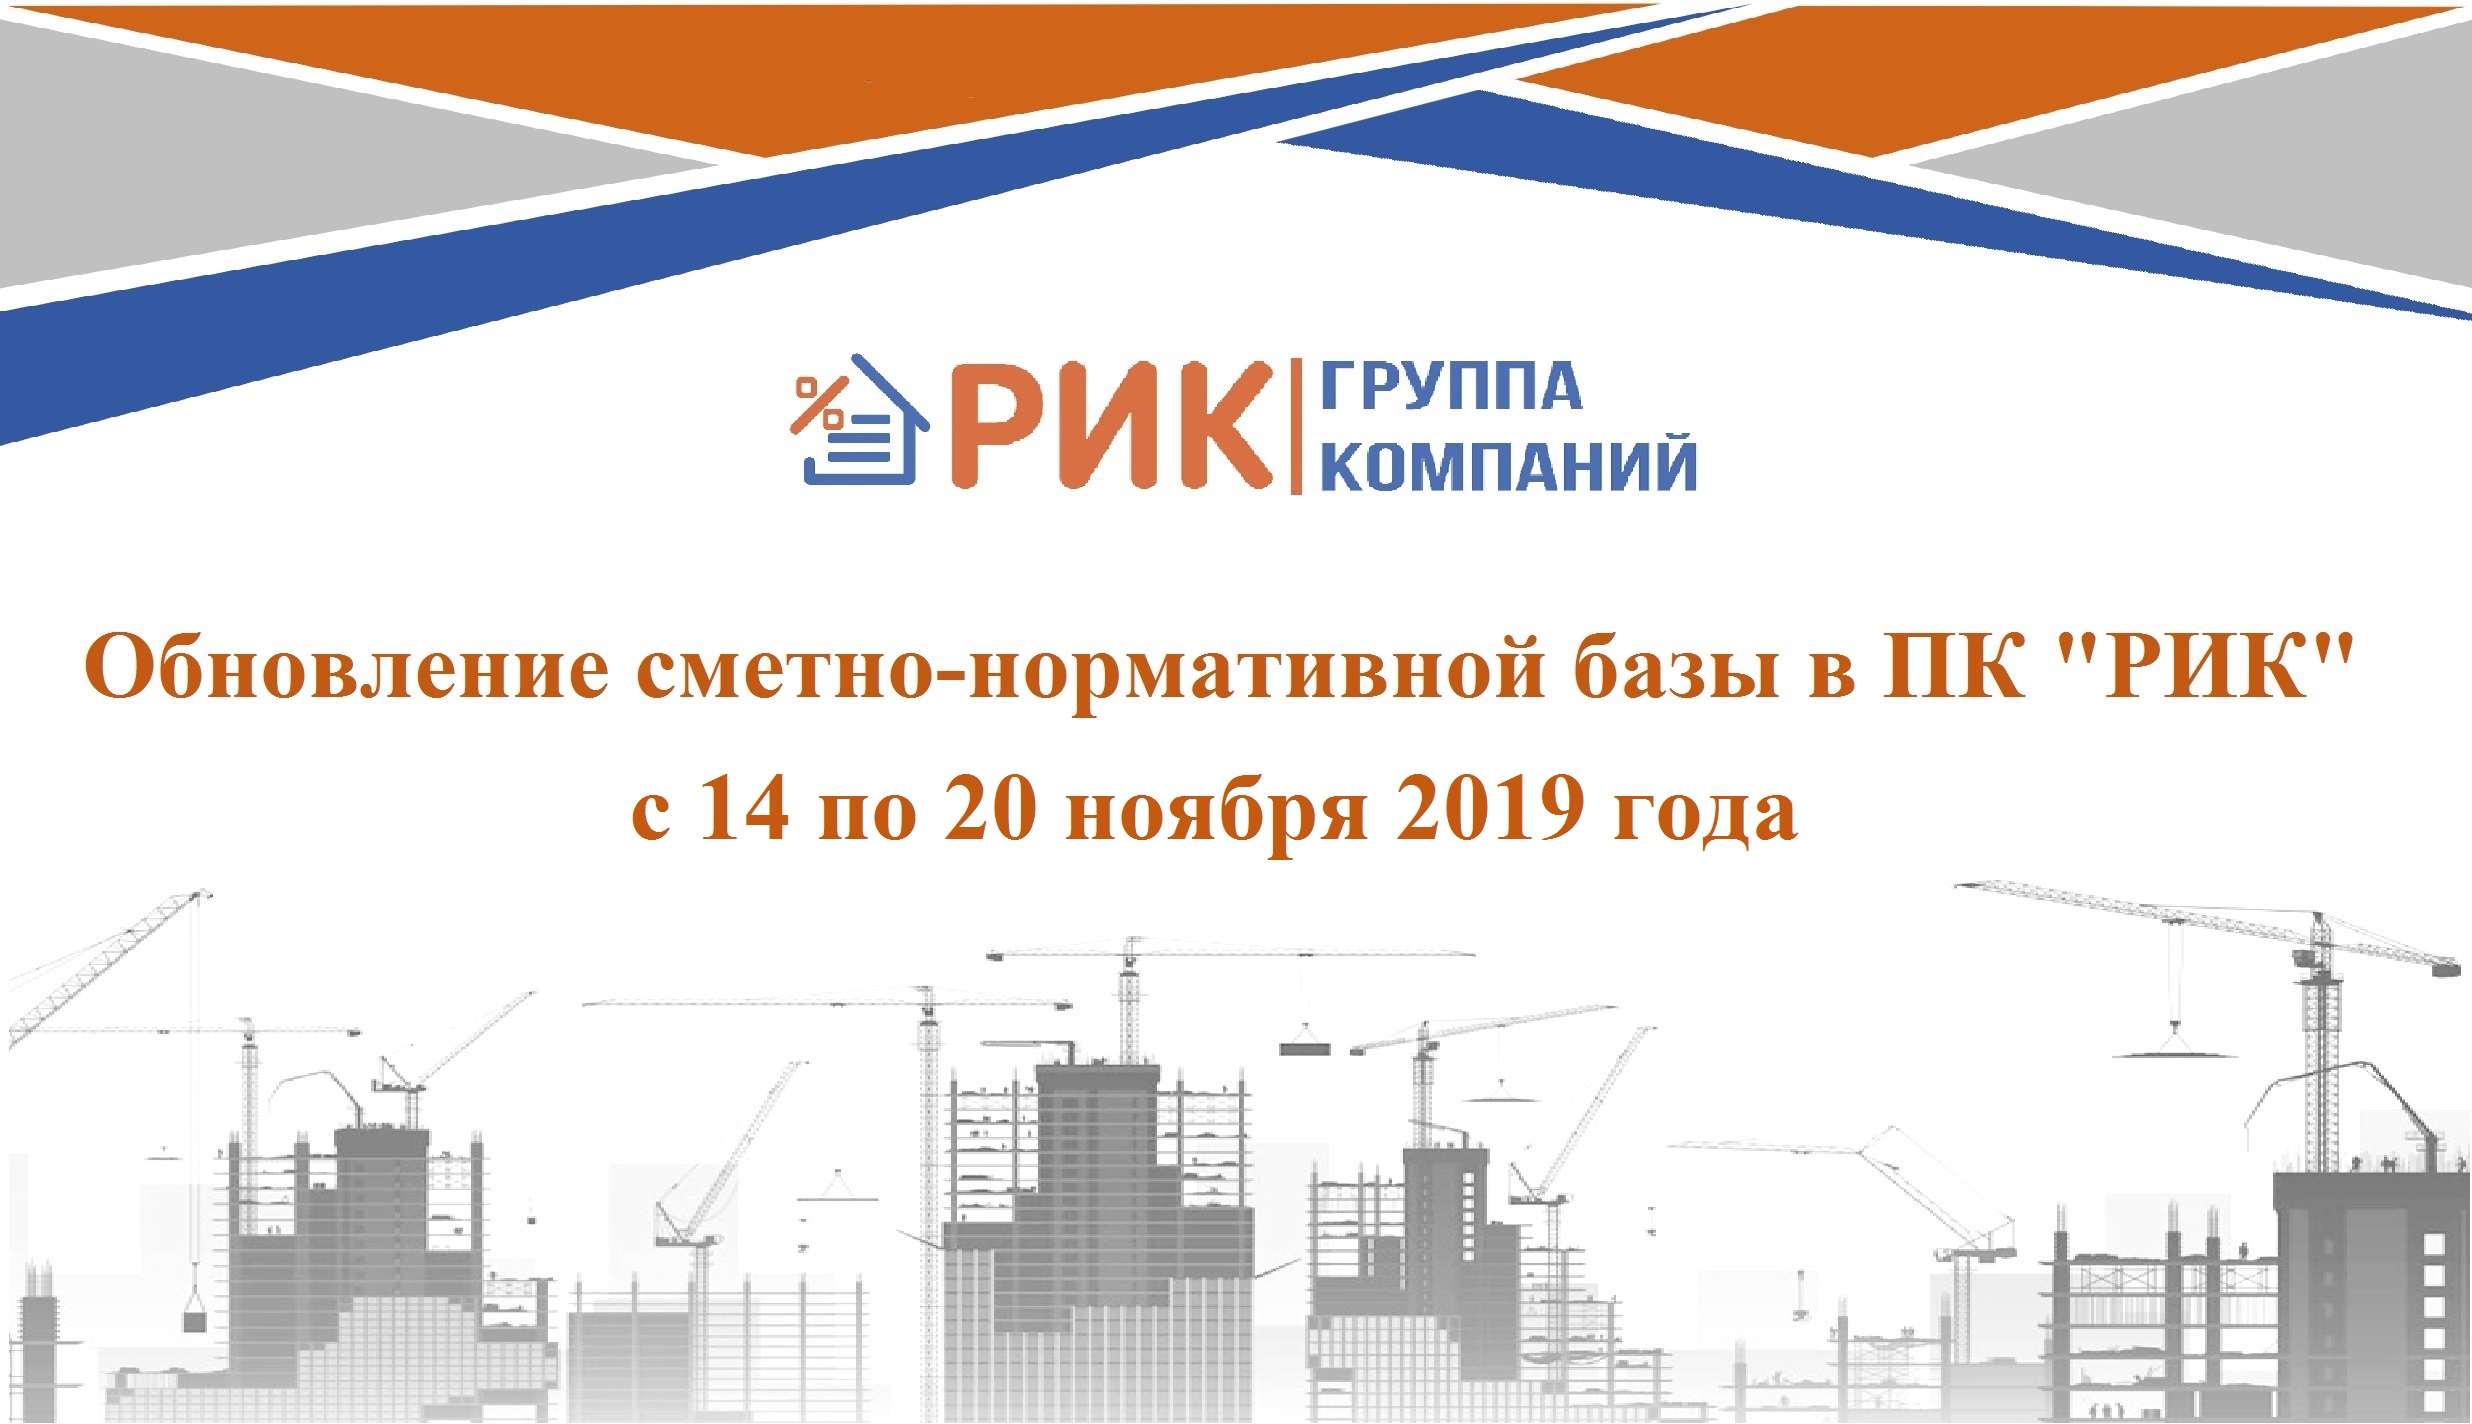 Обновление сметно-нормативной базы в ПК "РИК" с 14 по 20 ноября 2019 года.